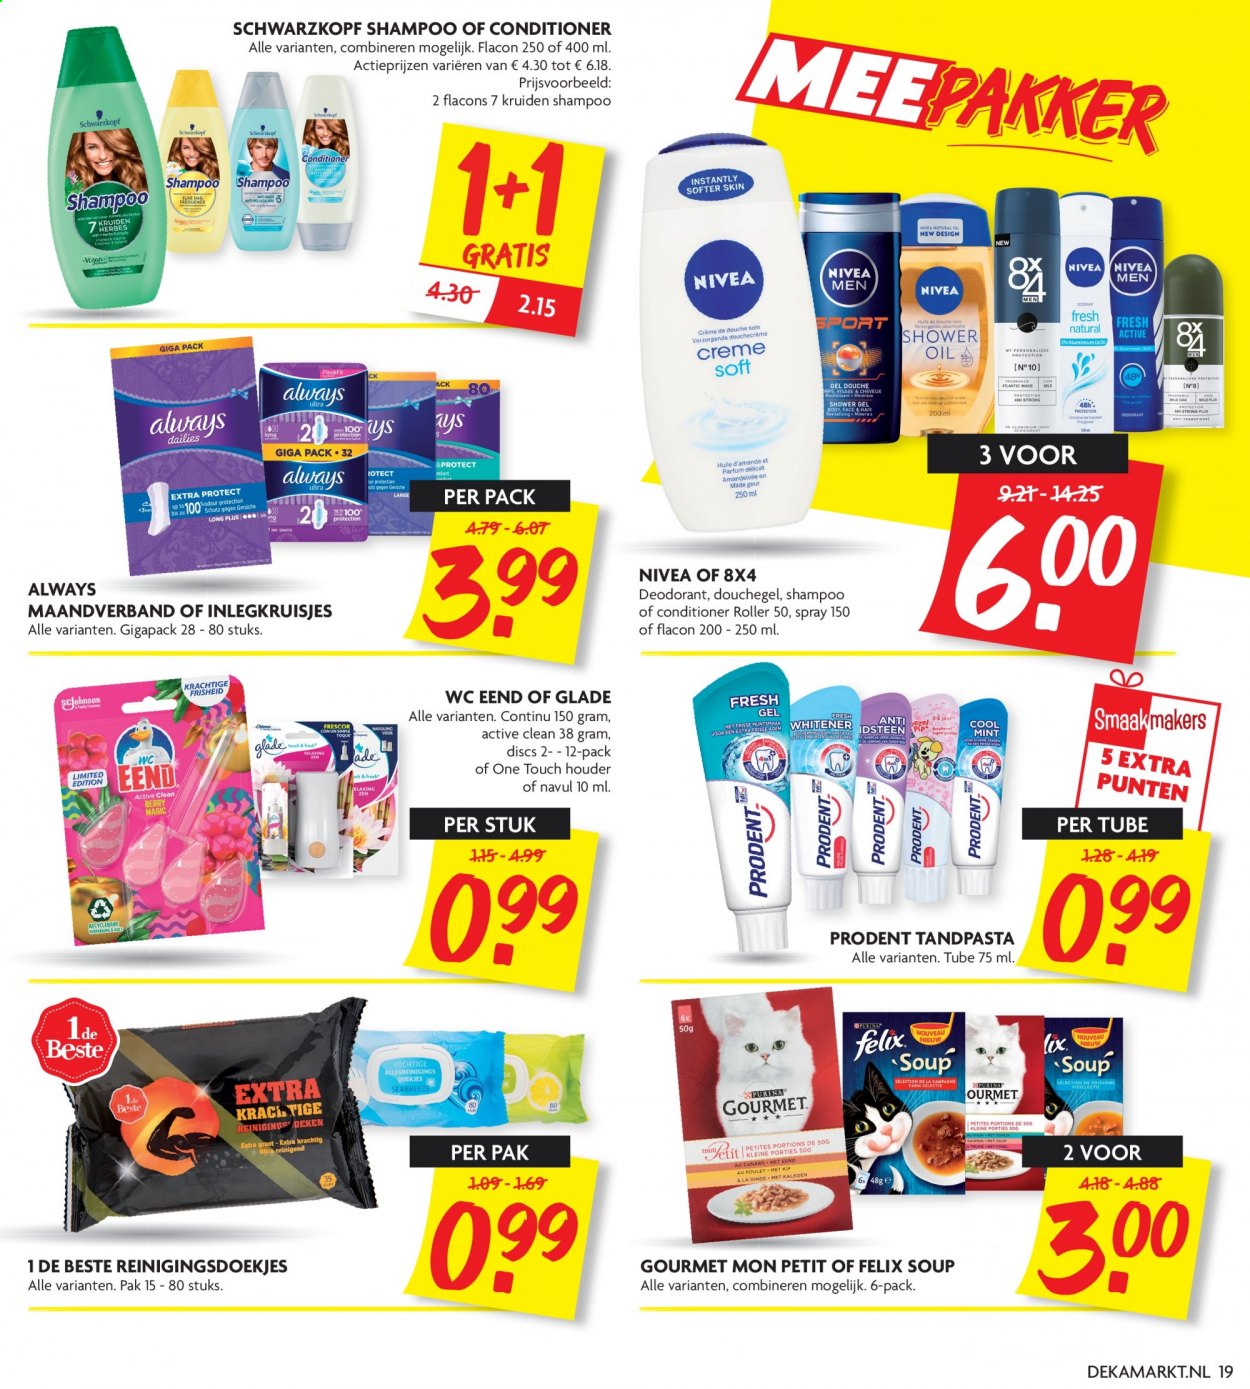 thumbnail - DekaMarkt-aanbieding - 11-4-2021 - 17-4-2021 -  producten in de aanbieding - Nivea, maandverband, reinigingsdoekjes, douchegel, shampoo, Prodent, tandpasta, inlegkruisjes, Always, Schwarzkopf, conditioner. Pagina 19.